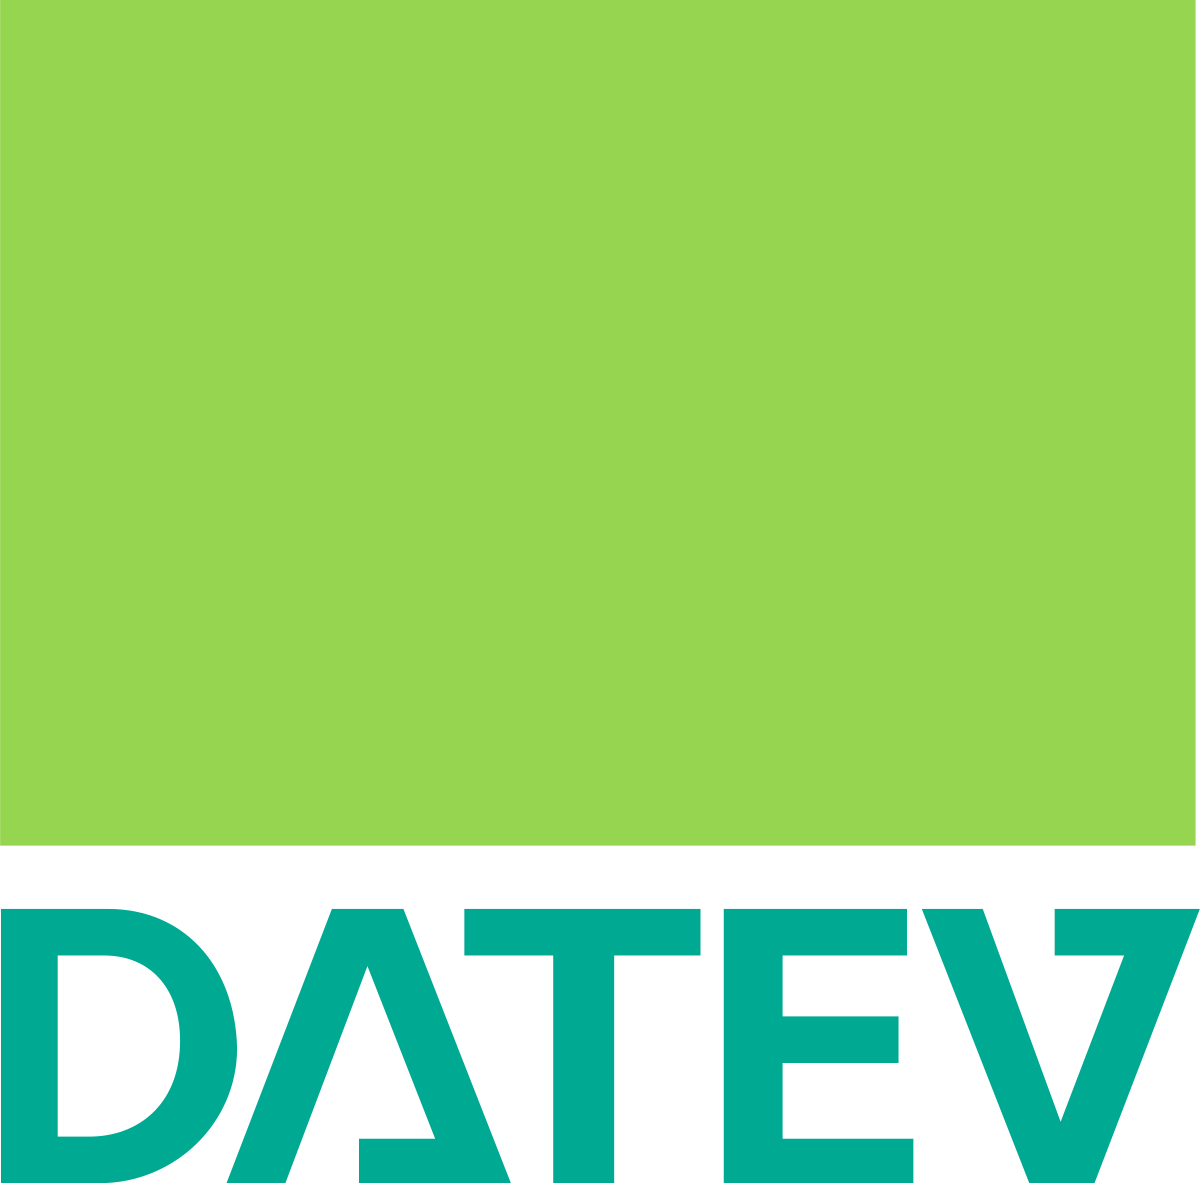 DATEV_Logo